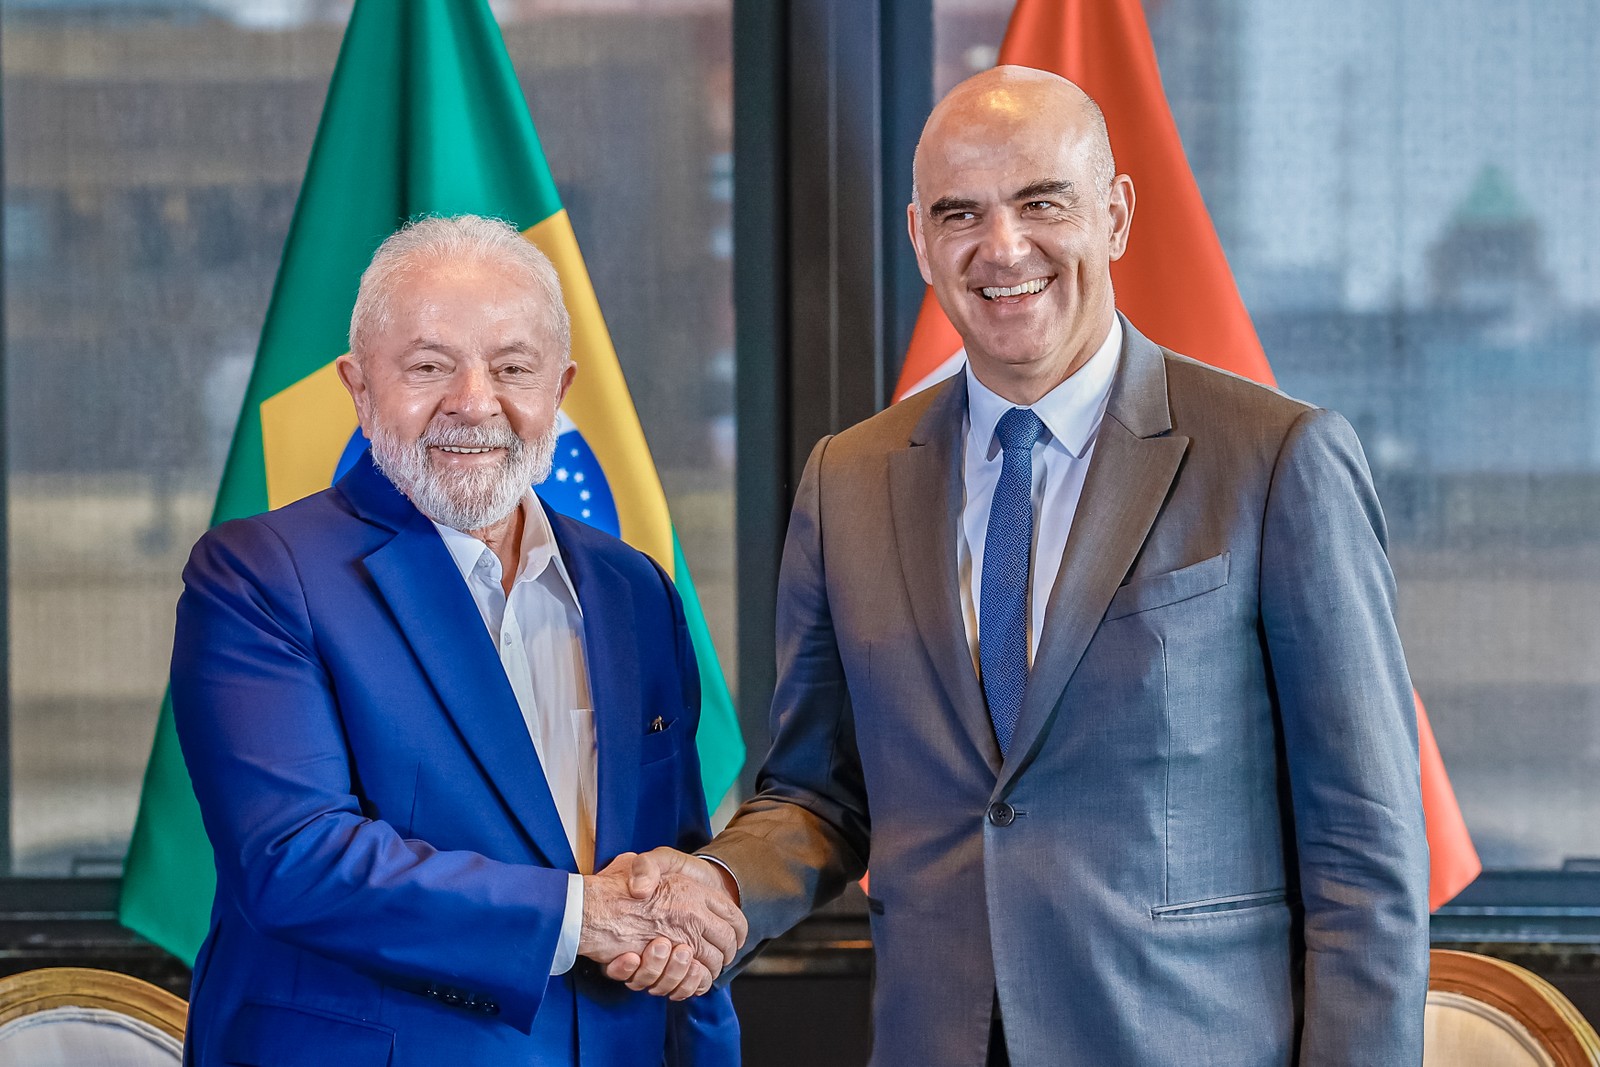 Presidente da República, Luiz Inácio Lula da Silva, durante encontro bilateral com o Presidente da Confederação Suíça, Alain Berset. — Foto: Ricardo Stuckert / PR